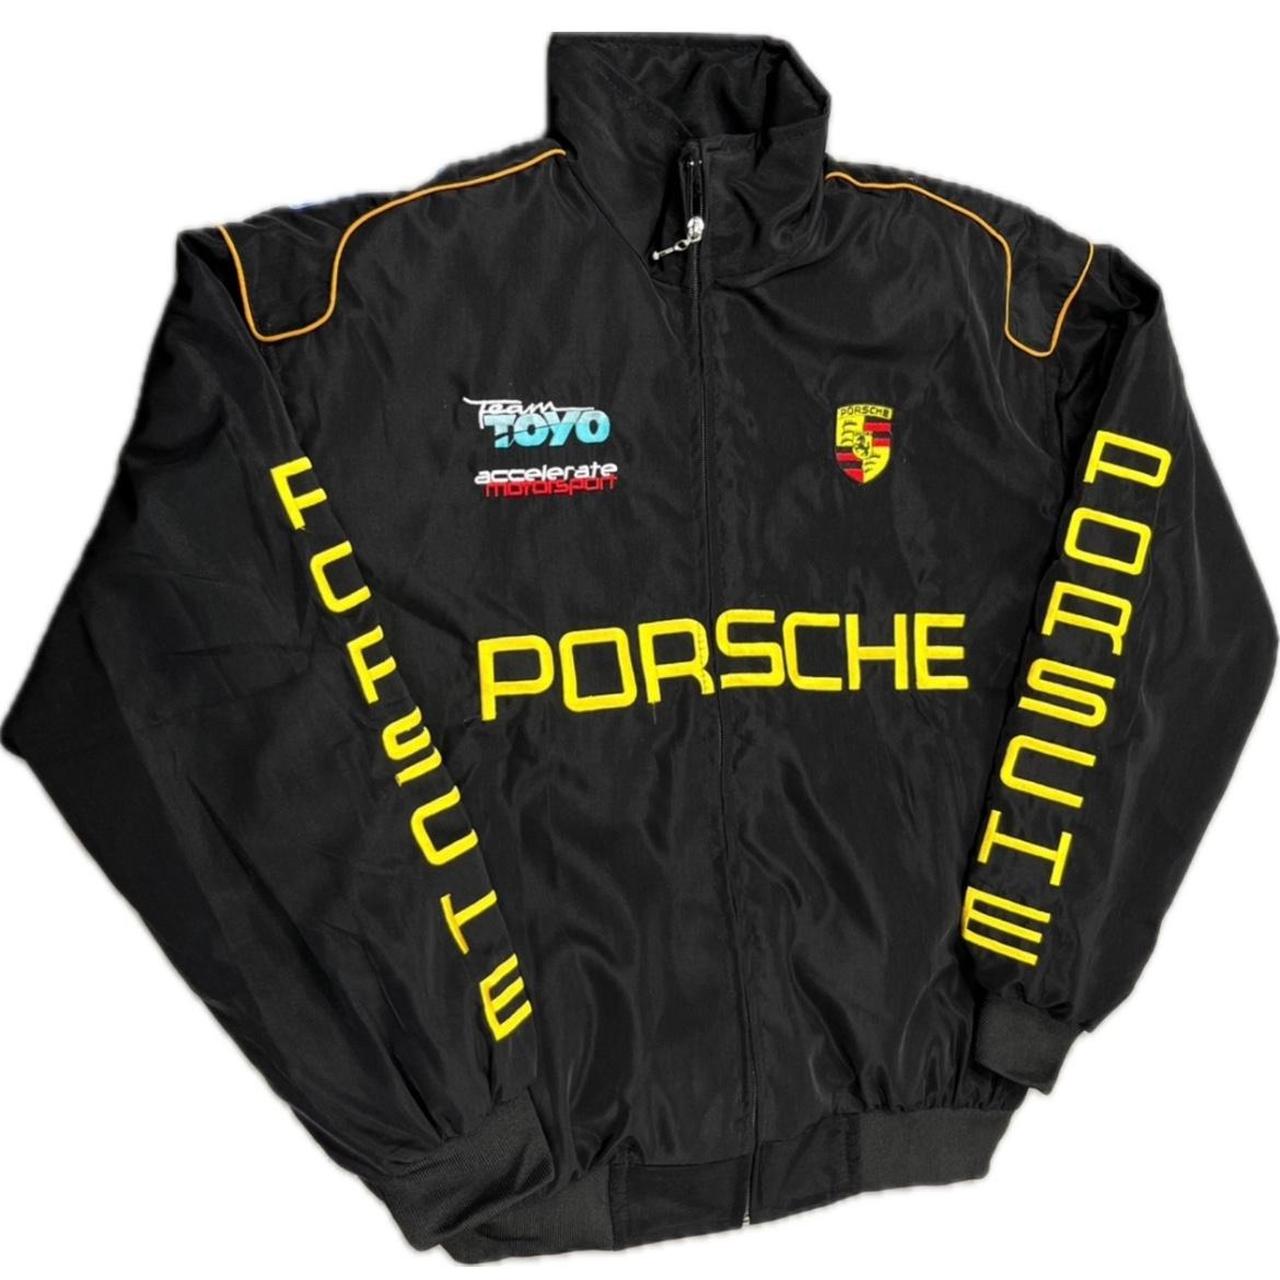 F1 Porsche racing jacket, NASCAR racing, zipper,... - Depop